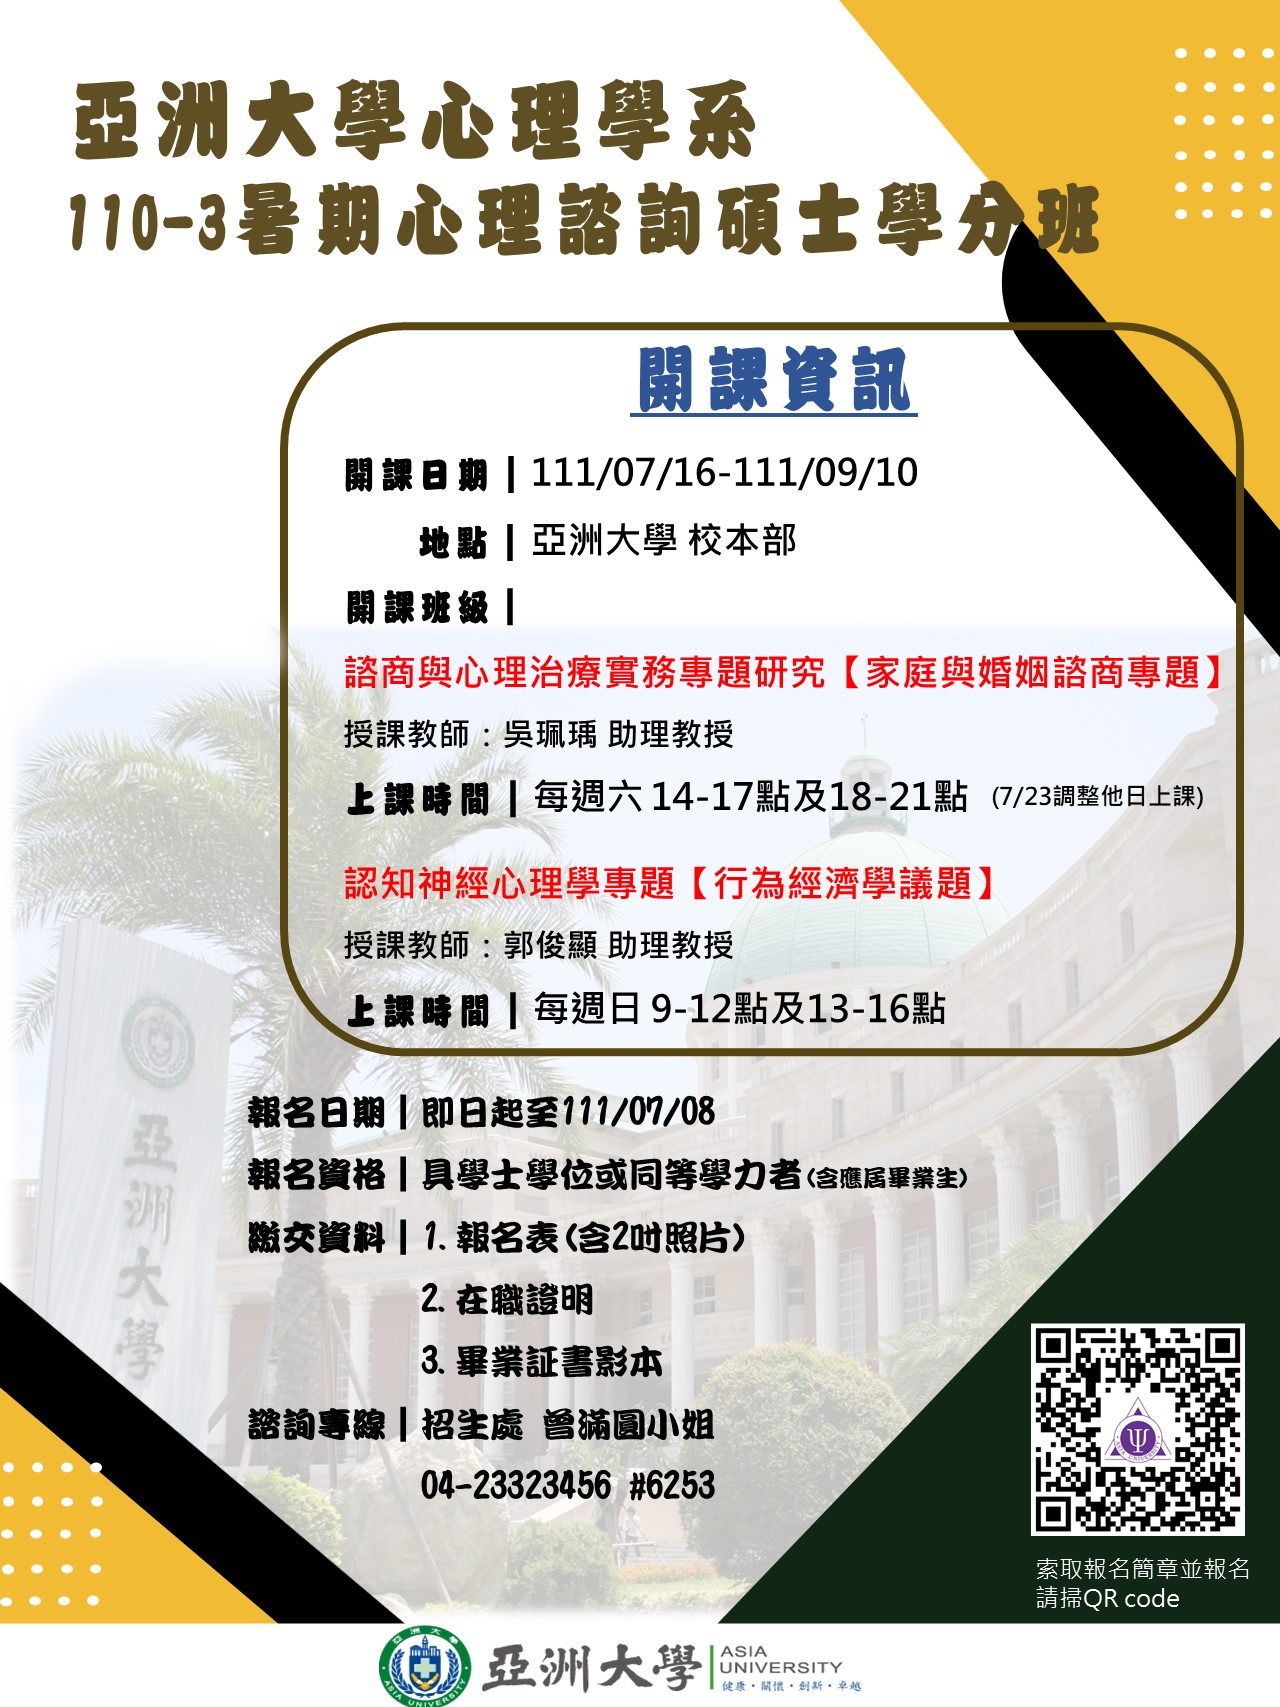 亞洲大學心理諮詢碩士學分班海報20220610-1